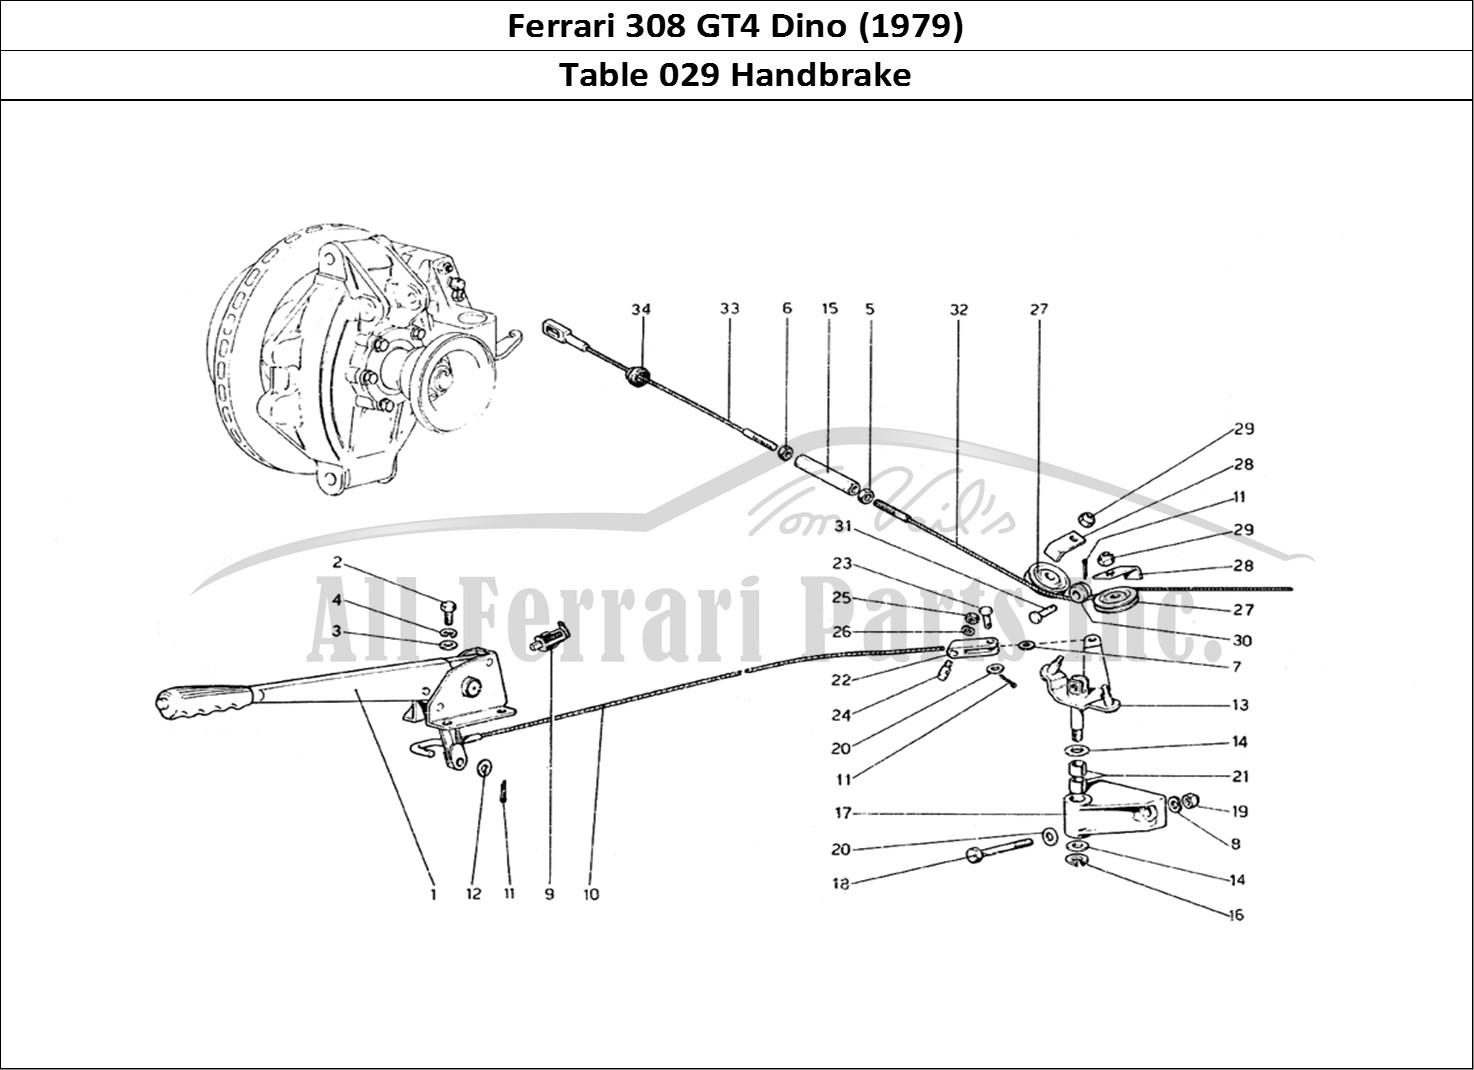 Ferrari Parts Ferrari 308 GT4 Dino (1979) Page 029 Hand - Brake Control